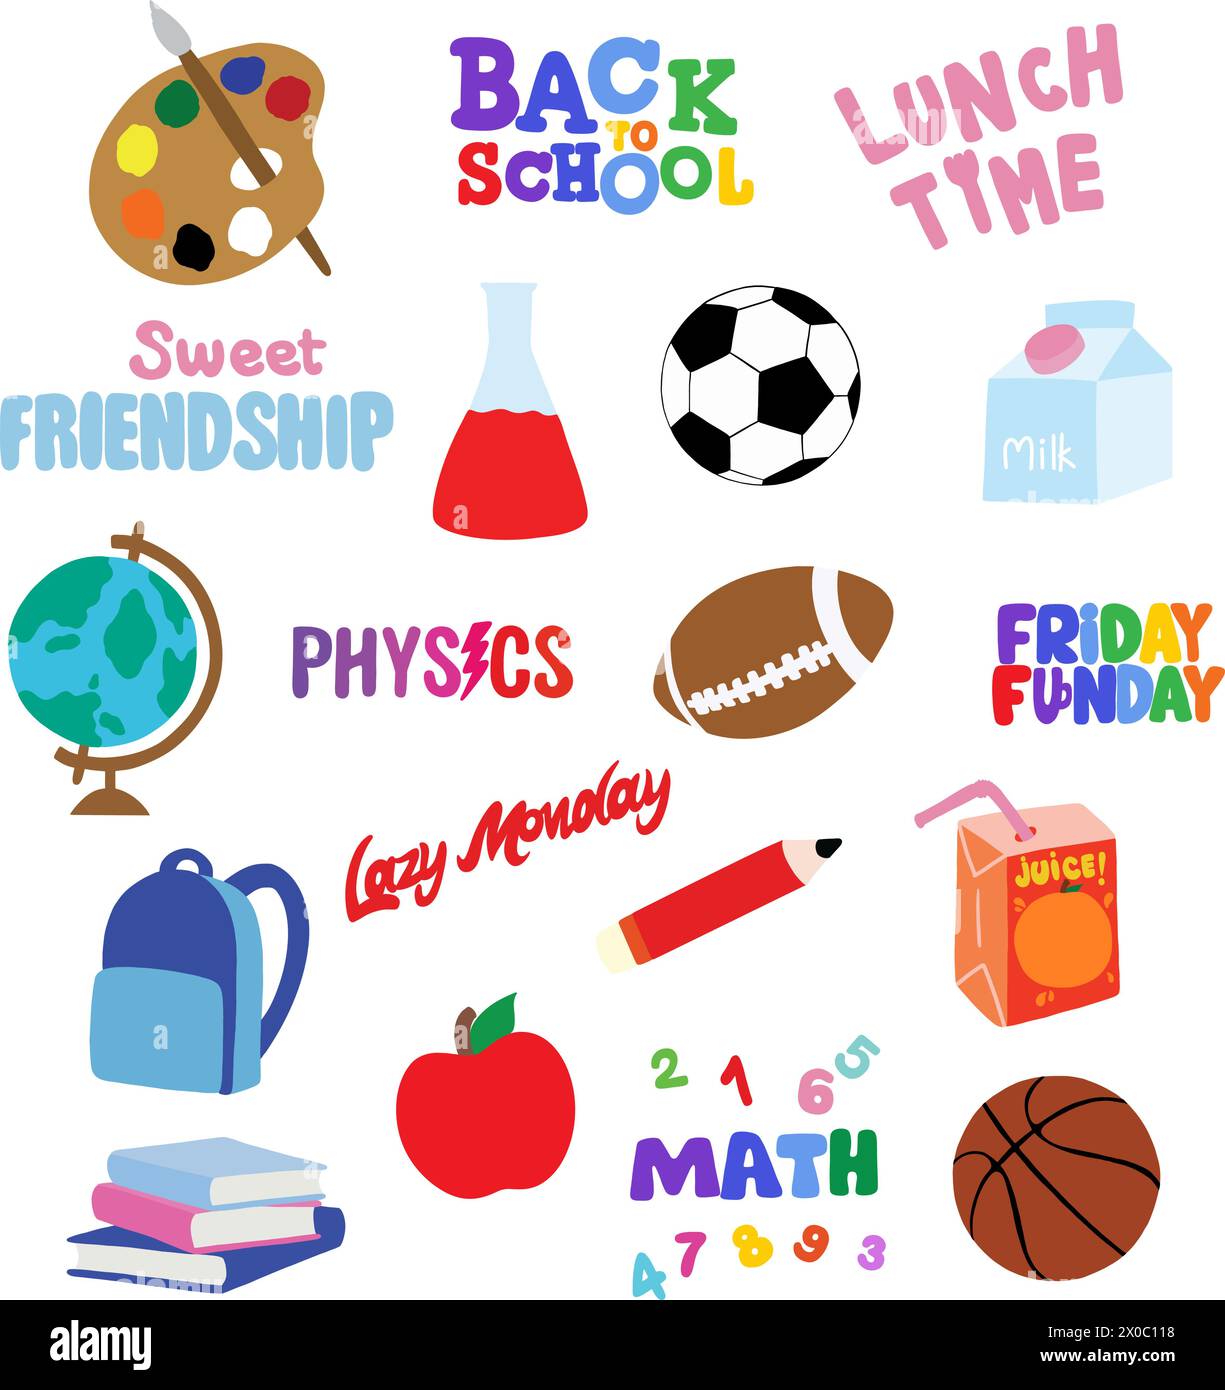 Handgezeichnet zu Schulsymbolen wie Wasserfarben, Rugbyball, Fußball, Basketball, Milchbox, Saftbox, Globus, Schultasche, Apfel, Mathe-Thema Stock Vektor